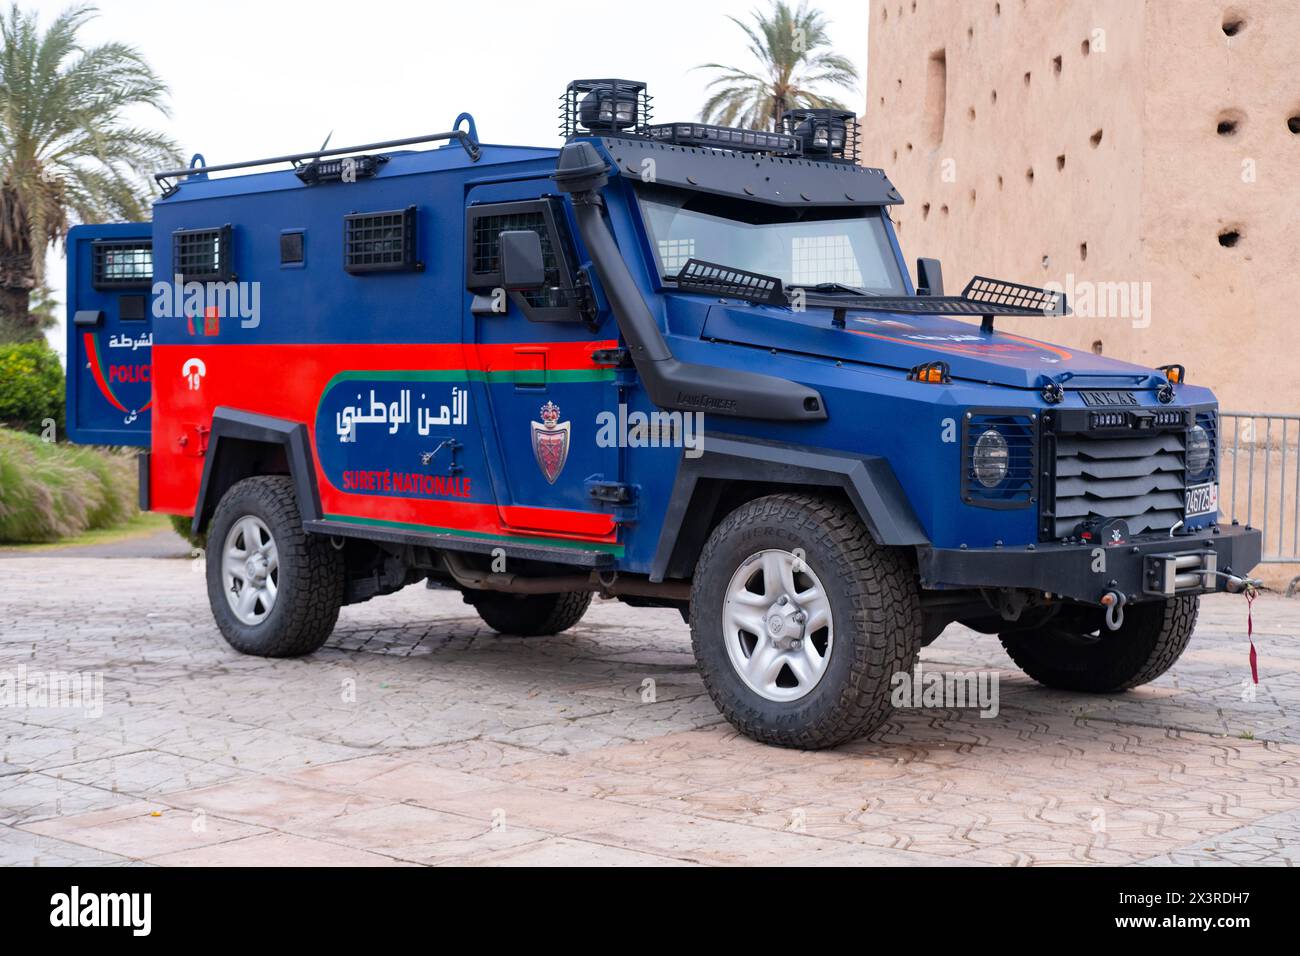 Voiture de police dans les rues de Marrakech, sécurité publique à Marrakech, service communautaire, la loi et l'ordre maintient nos communautés en sécurité, Marrakech, Maroc - Janu Banque D'Images